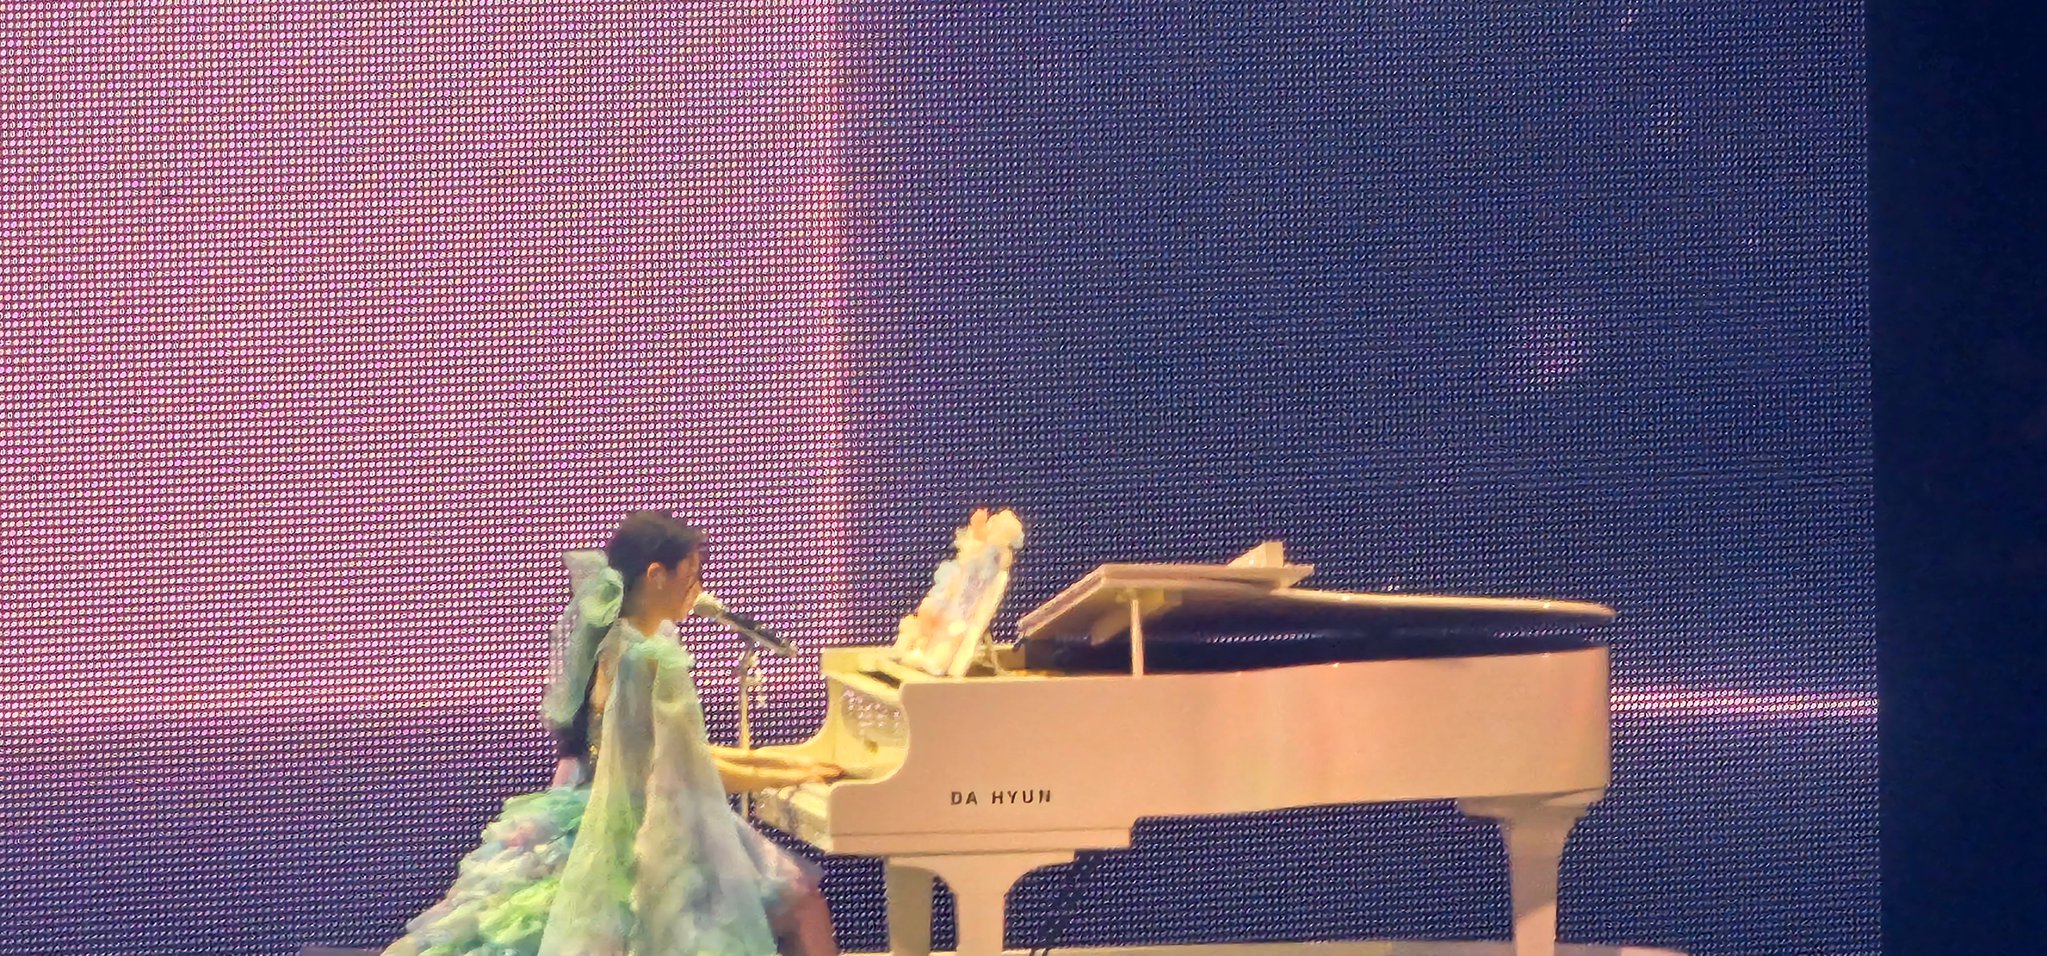 무대에서 피아노 치며 노래 부르는 트와이스 다현